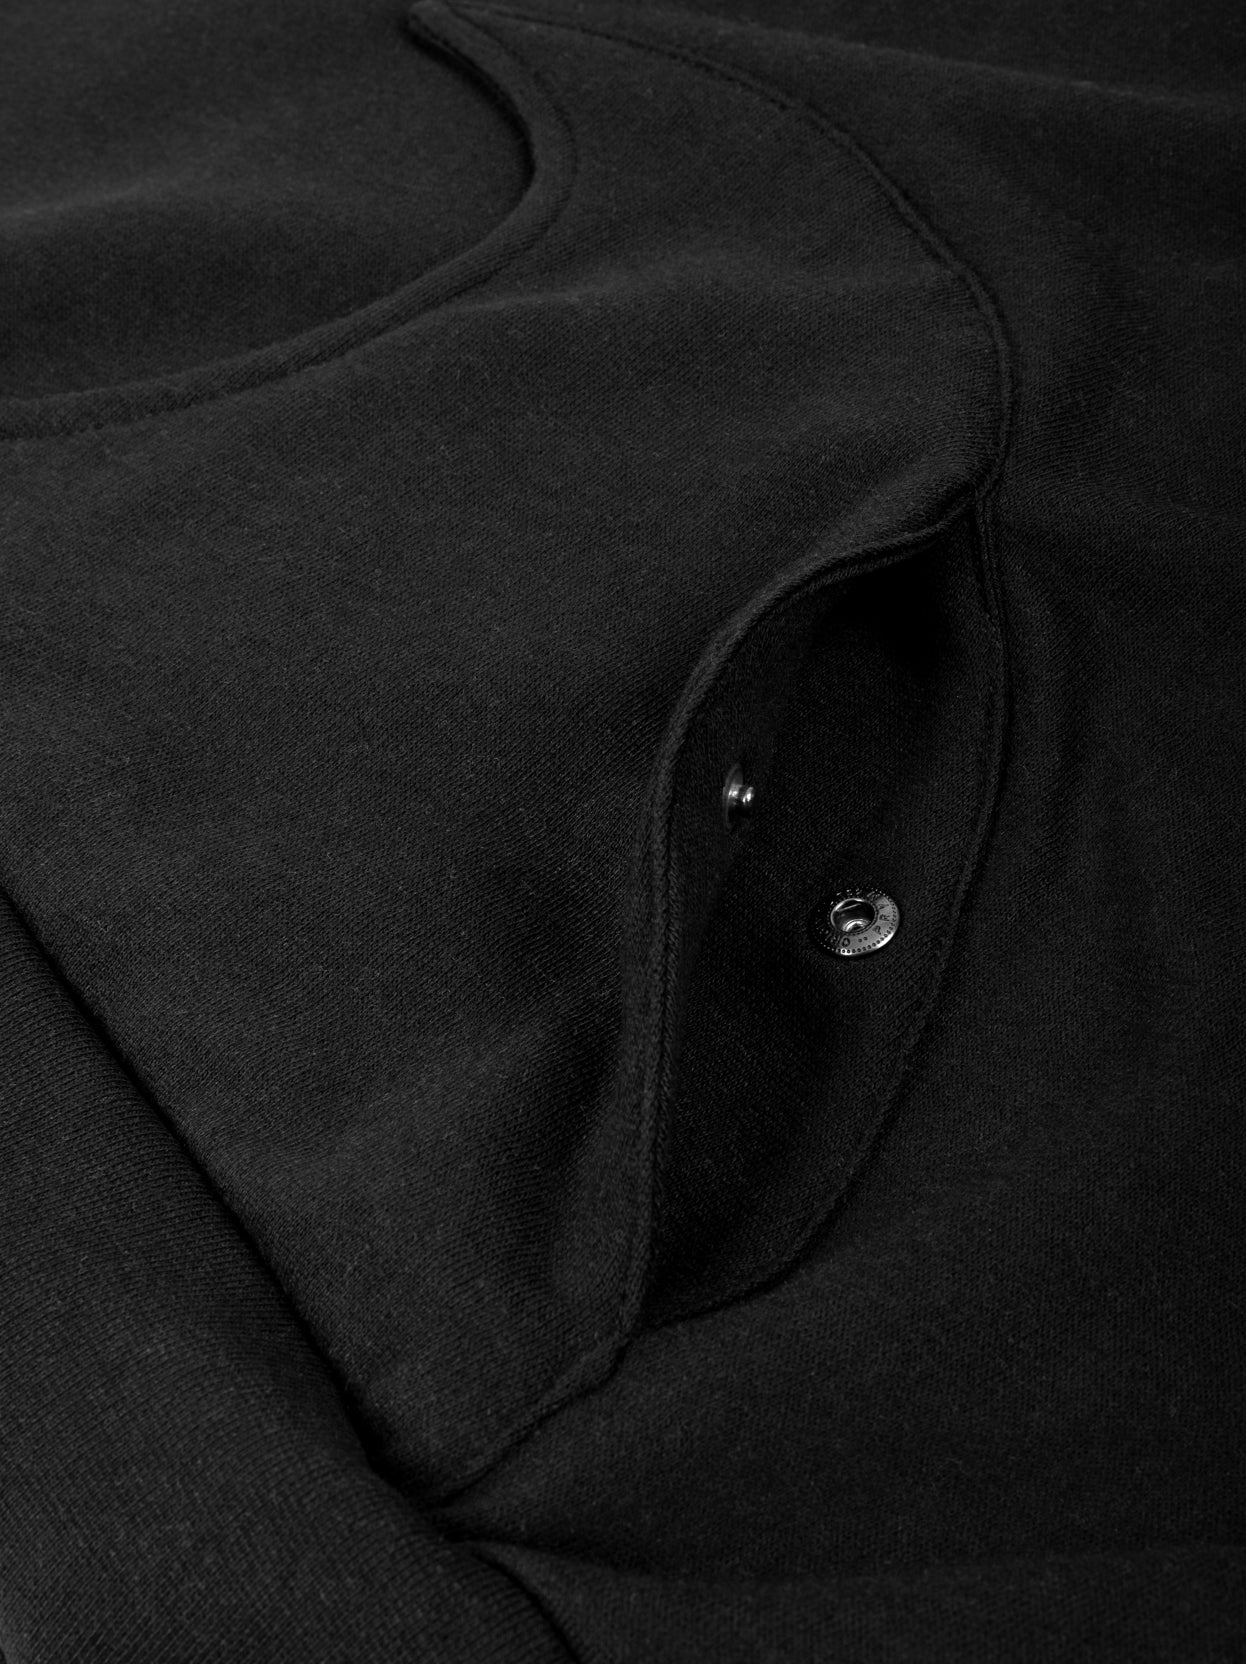 Black wave hoodie open pocket